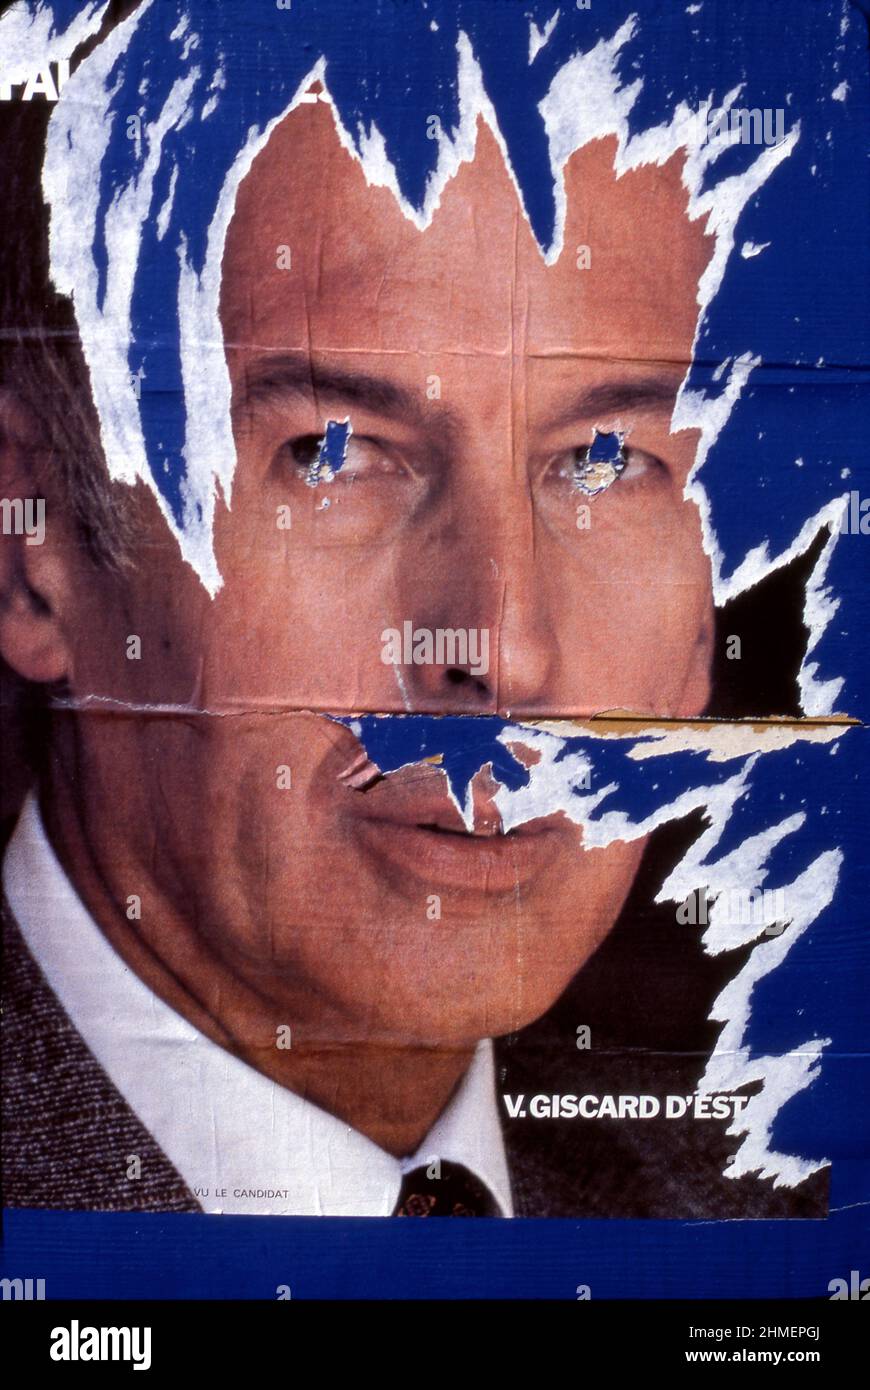 Affiche déchirée du président français Valéry Giscard d'Estaing dans la rue de Paris, France vers 1981 Banque D'Images